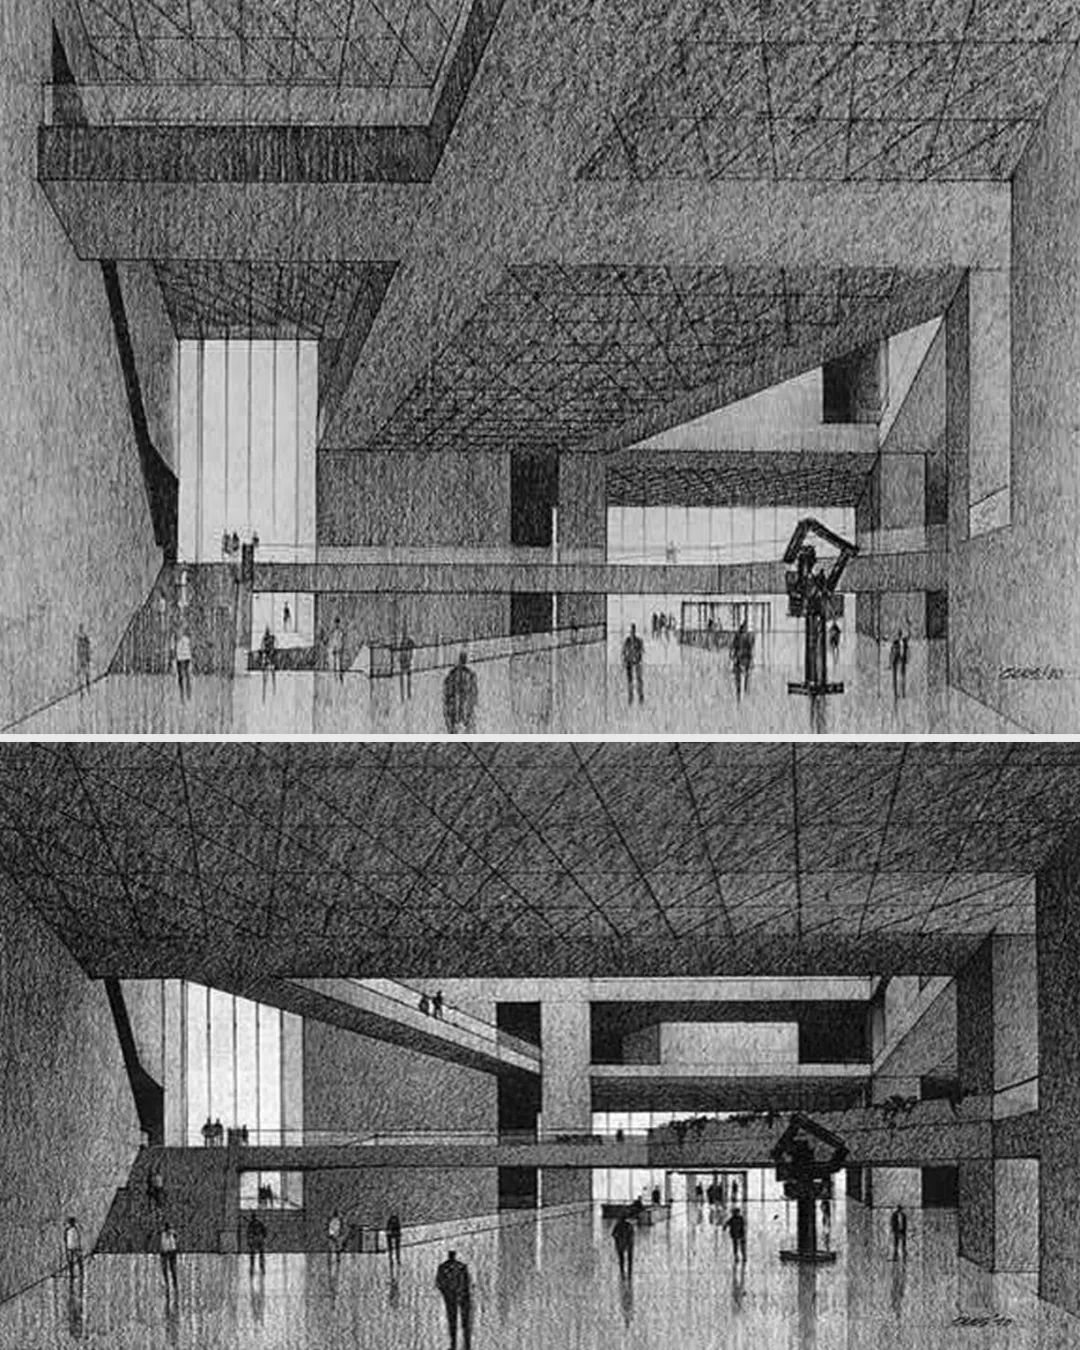 1969年11月6日的透視圖中庭被厚重得混凝土樓板覆蓋（上圖），1970年12月1日的透視圖中出現東西向的天橋（下圖）